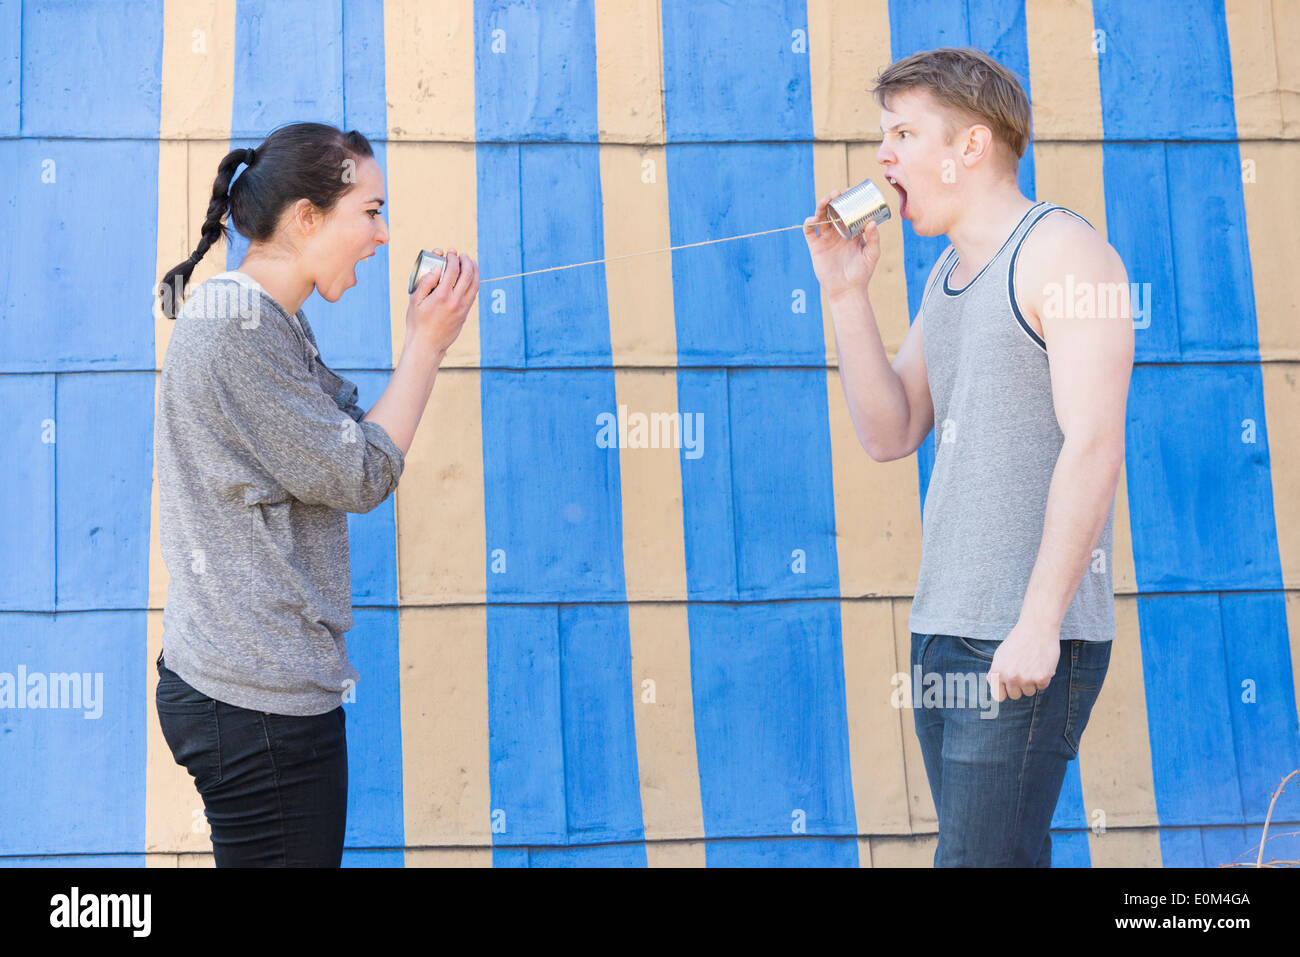 Young man and woman shouting in a tin can téléphone Conceptual image montrant la colère et frustration dans une relation. Banque D'Images